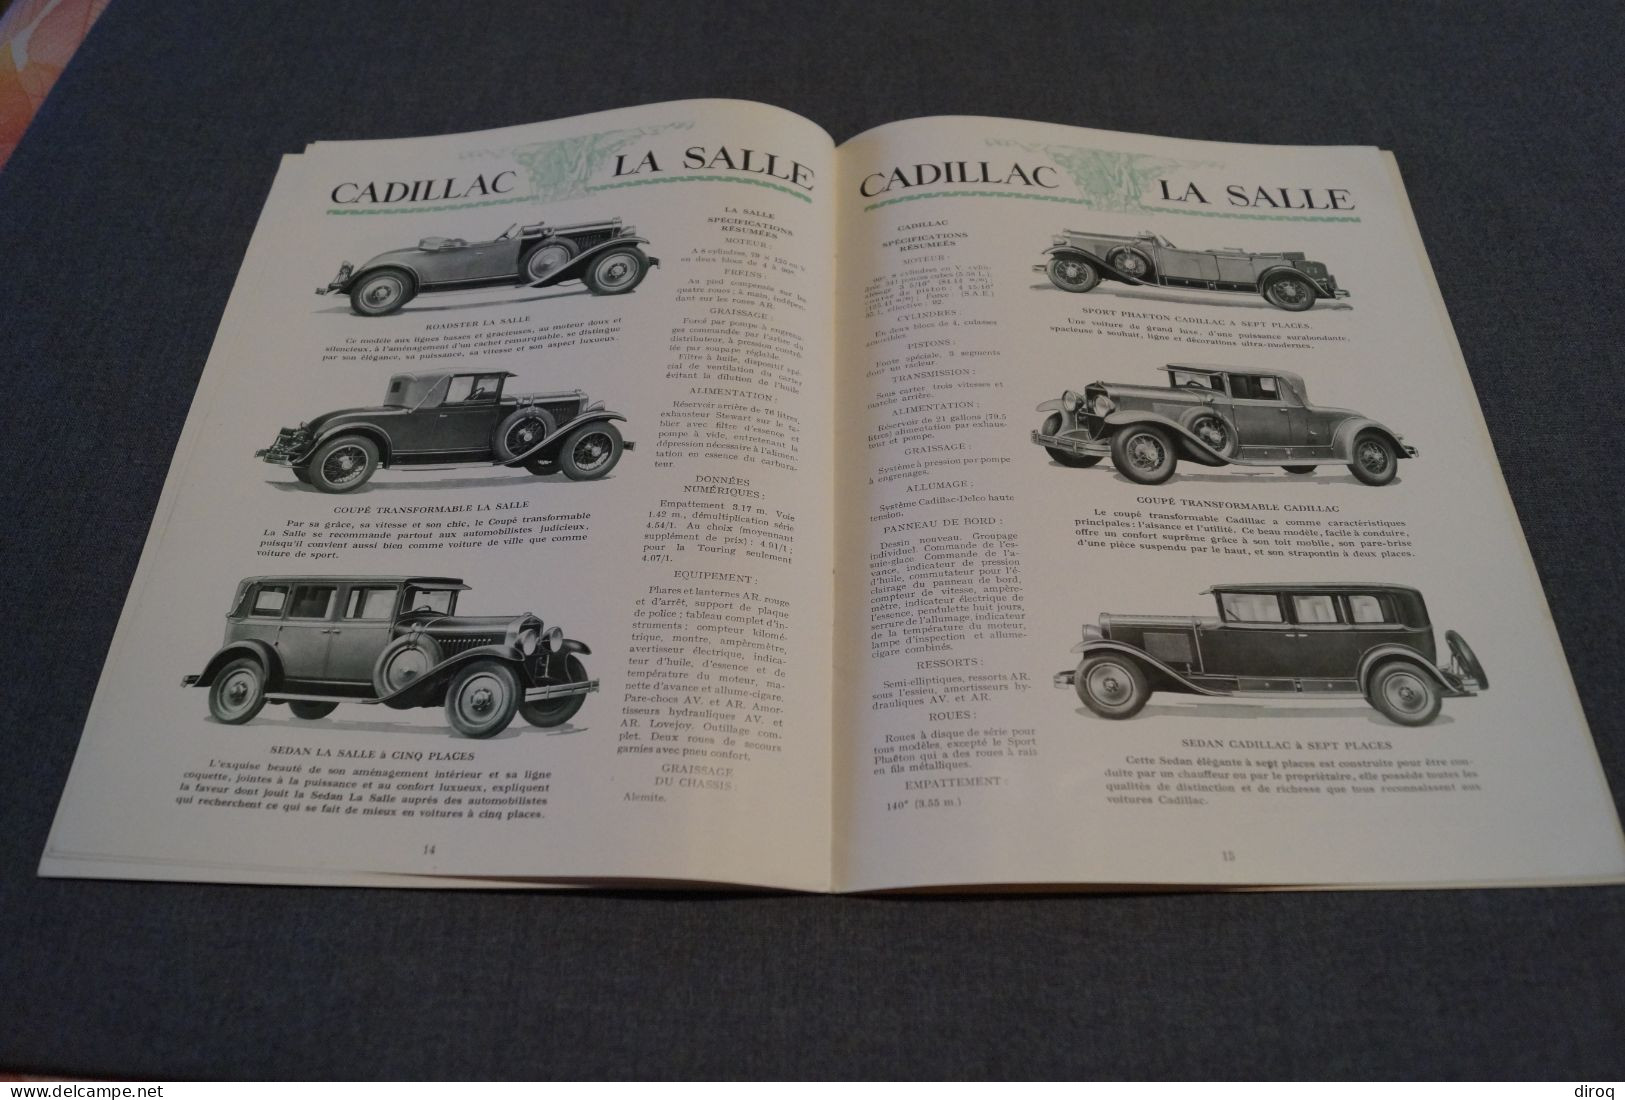 Général Motors,une famille hors ligne,original,16 pages,anciennes voitures,29 Cm. sur 22 Cm.